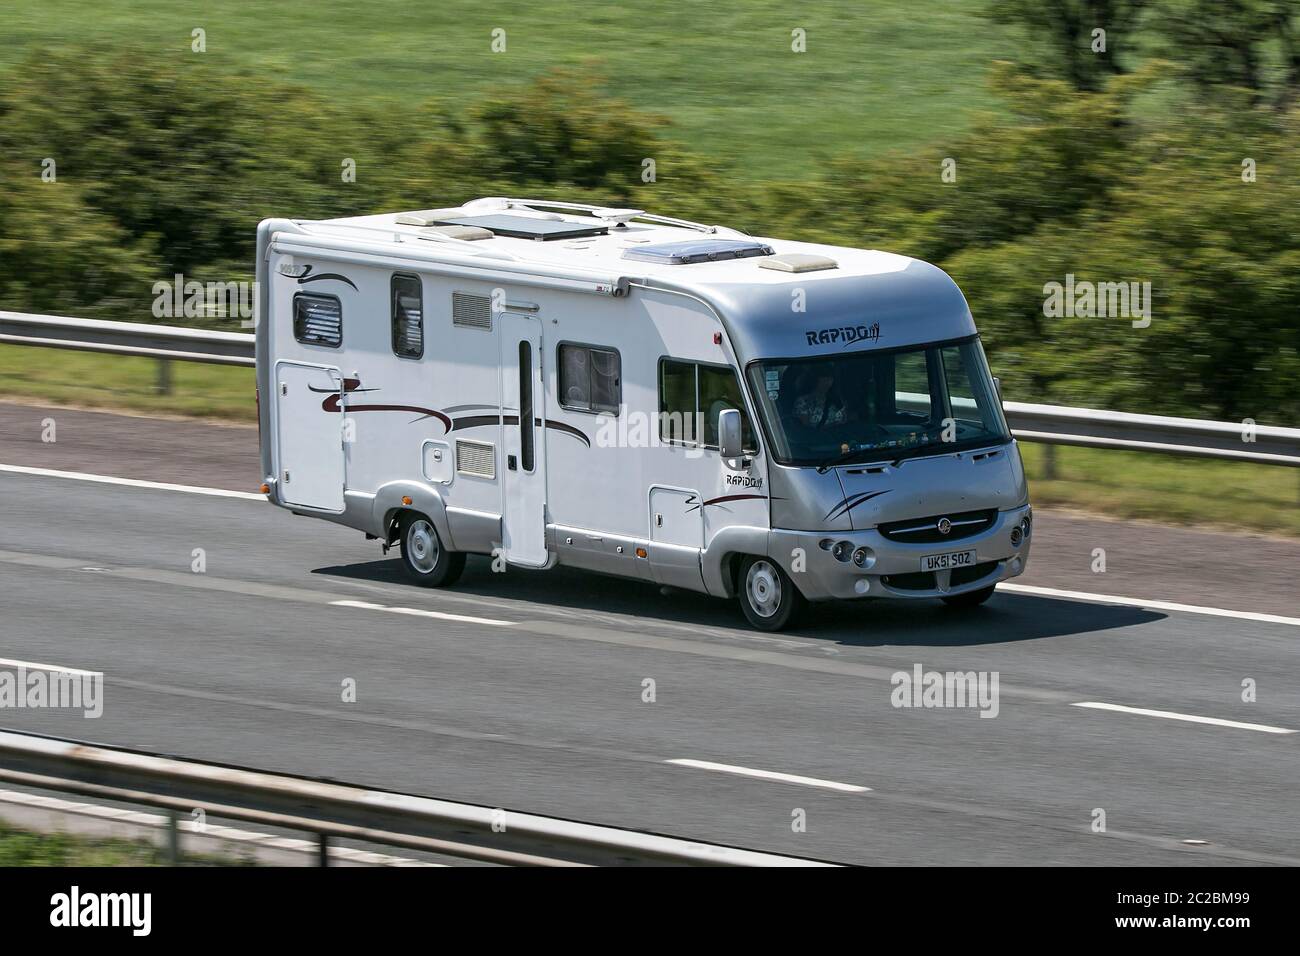 Caravan e Motorhomes, camper sulle strade della Gran Bretagna, RV veicolo per il tempo libero, vacanze in famiglia, vacanze caravanette, guida sulla M6 autostrada UK Foto Stock